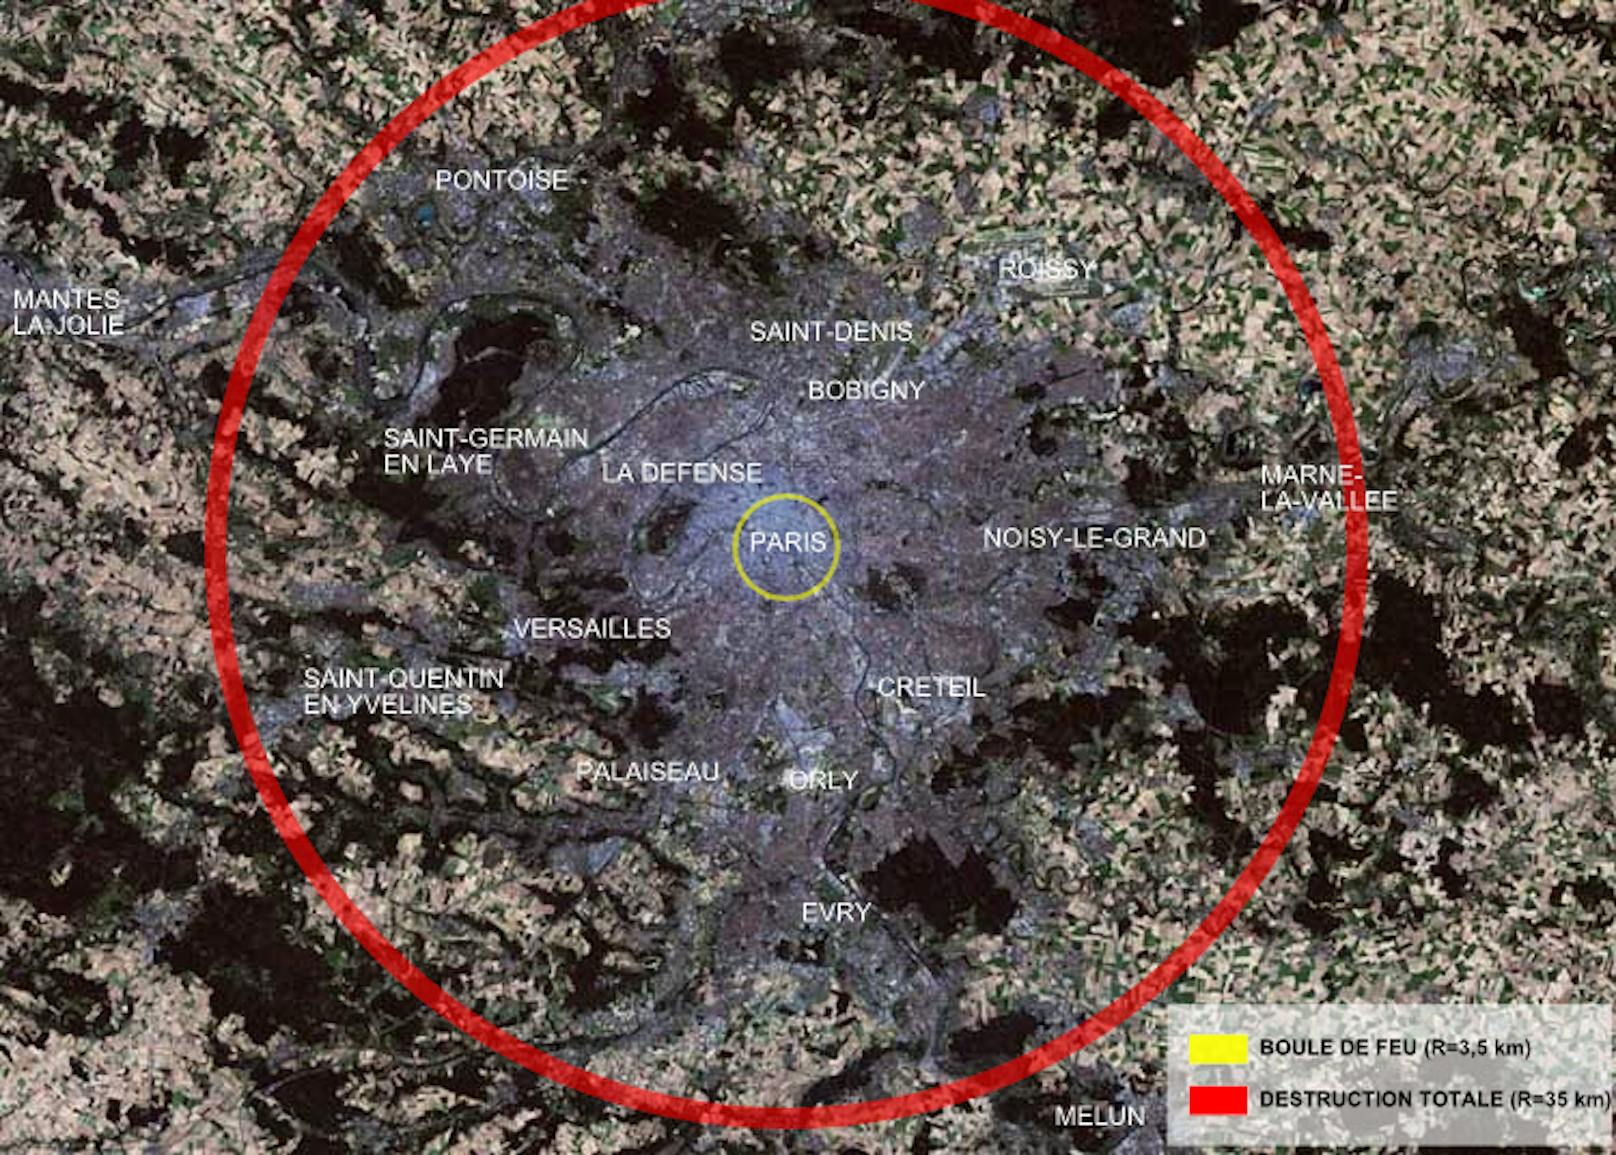 Zerstörungswirkung der Zar-Bombe über einer Karte von Paris: Der rote Kreis umfasst die Zone totaler Zerstörung (Radius: 35 km), der gelbe Kreis den Feuerball (Radius: 3,5 km).